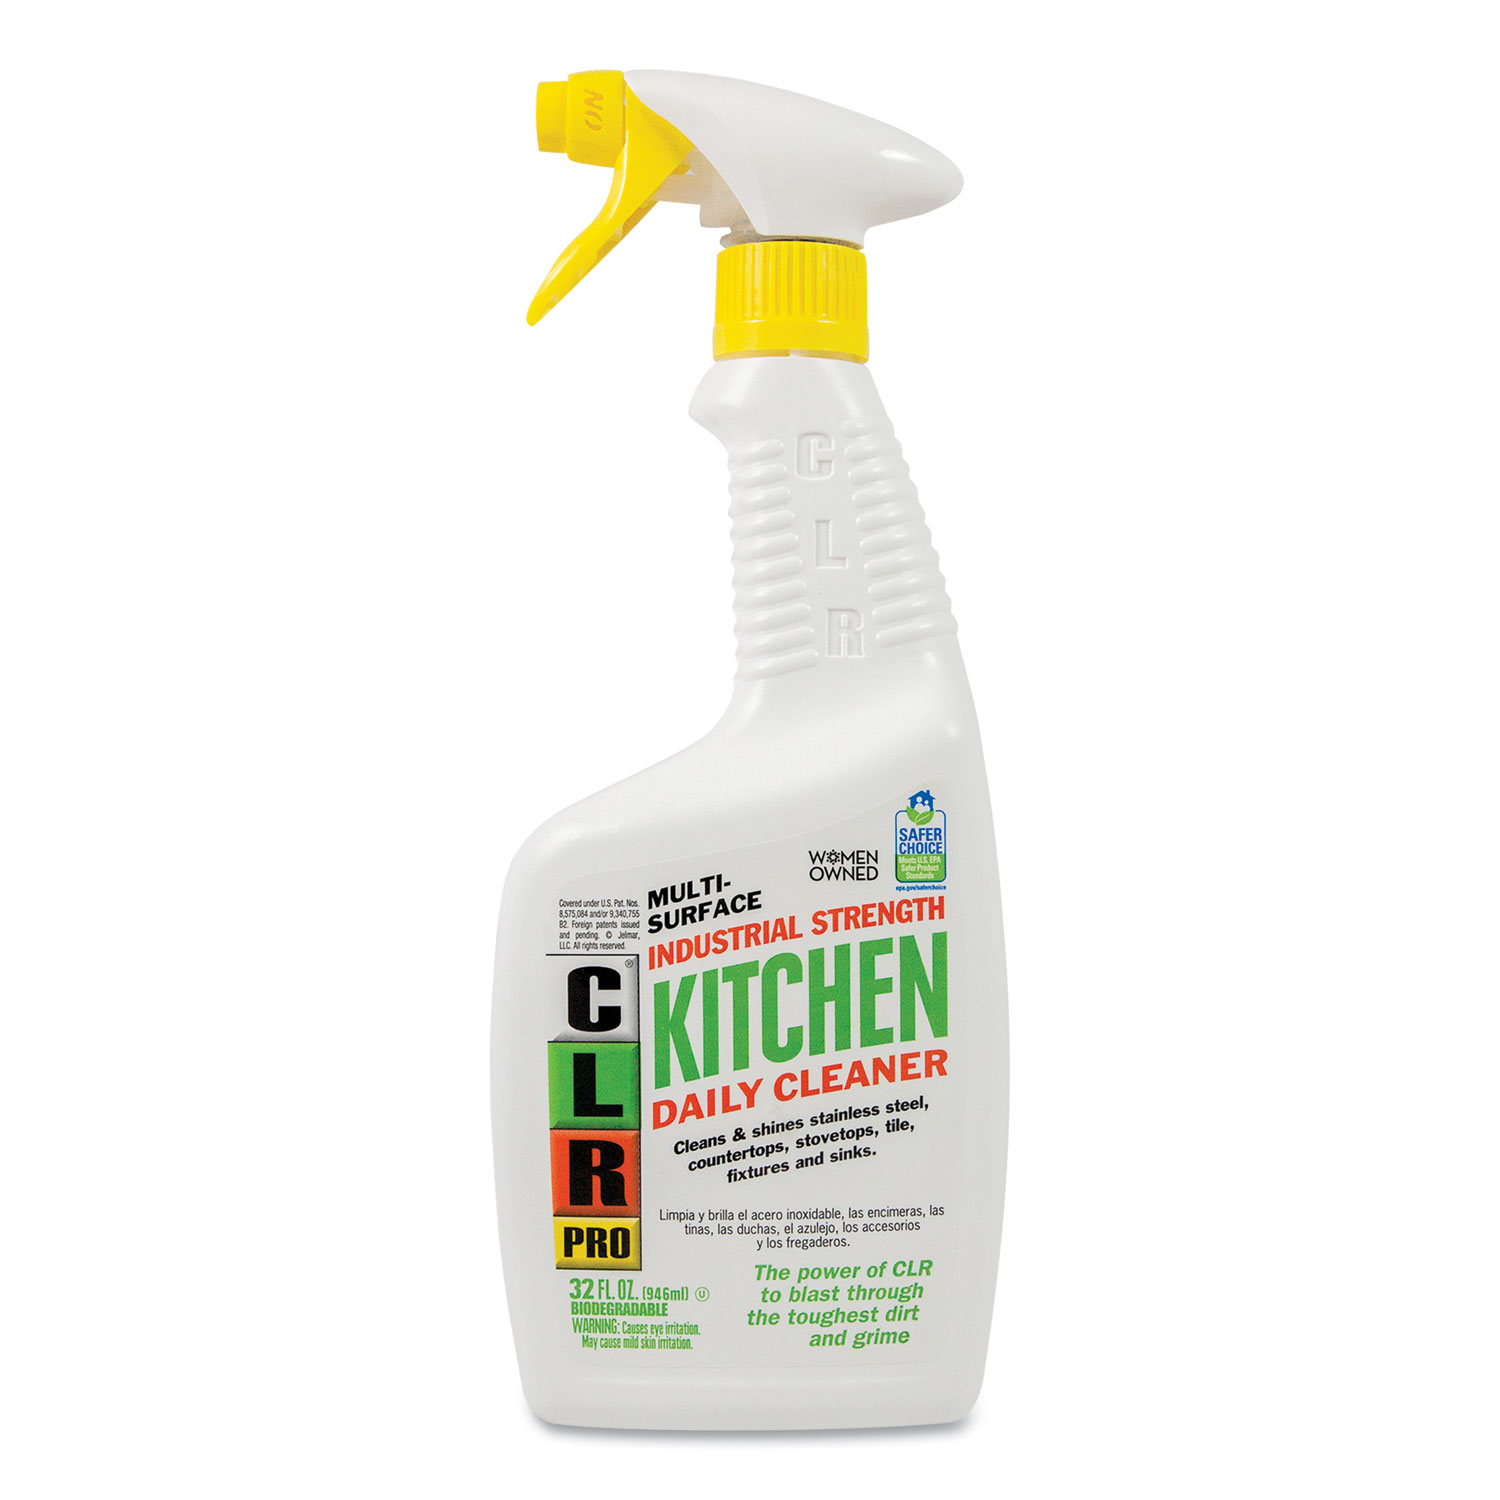  CLR PRO KITCHEN-32PRO Kitchen Daily Cleaner, Light Lavender Scent, 32 oz Spray Bottle, 6/Carton (JELKITCHEN32PRO) 